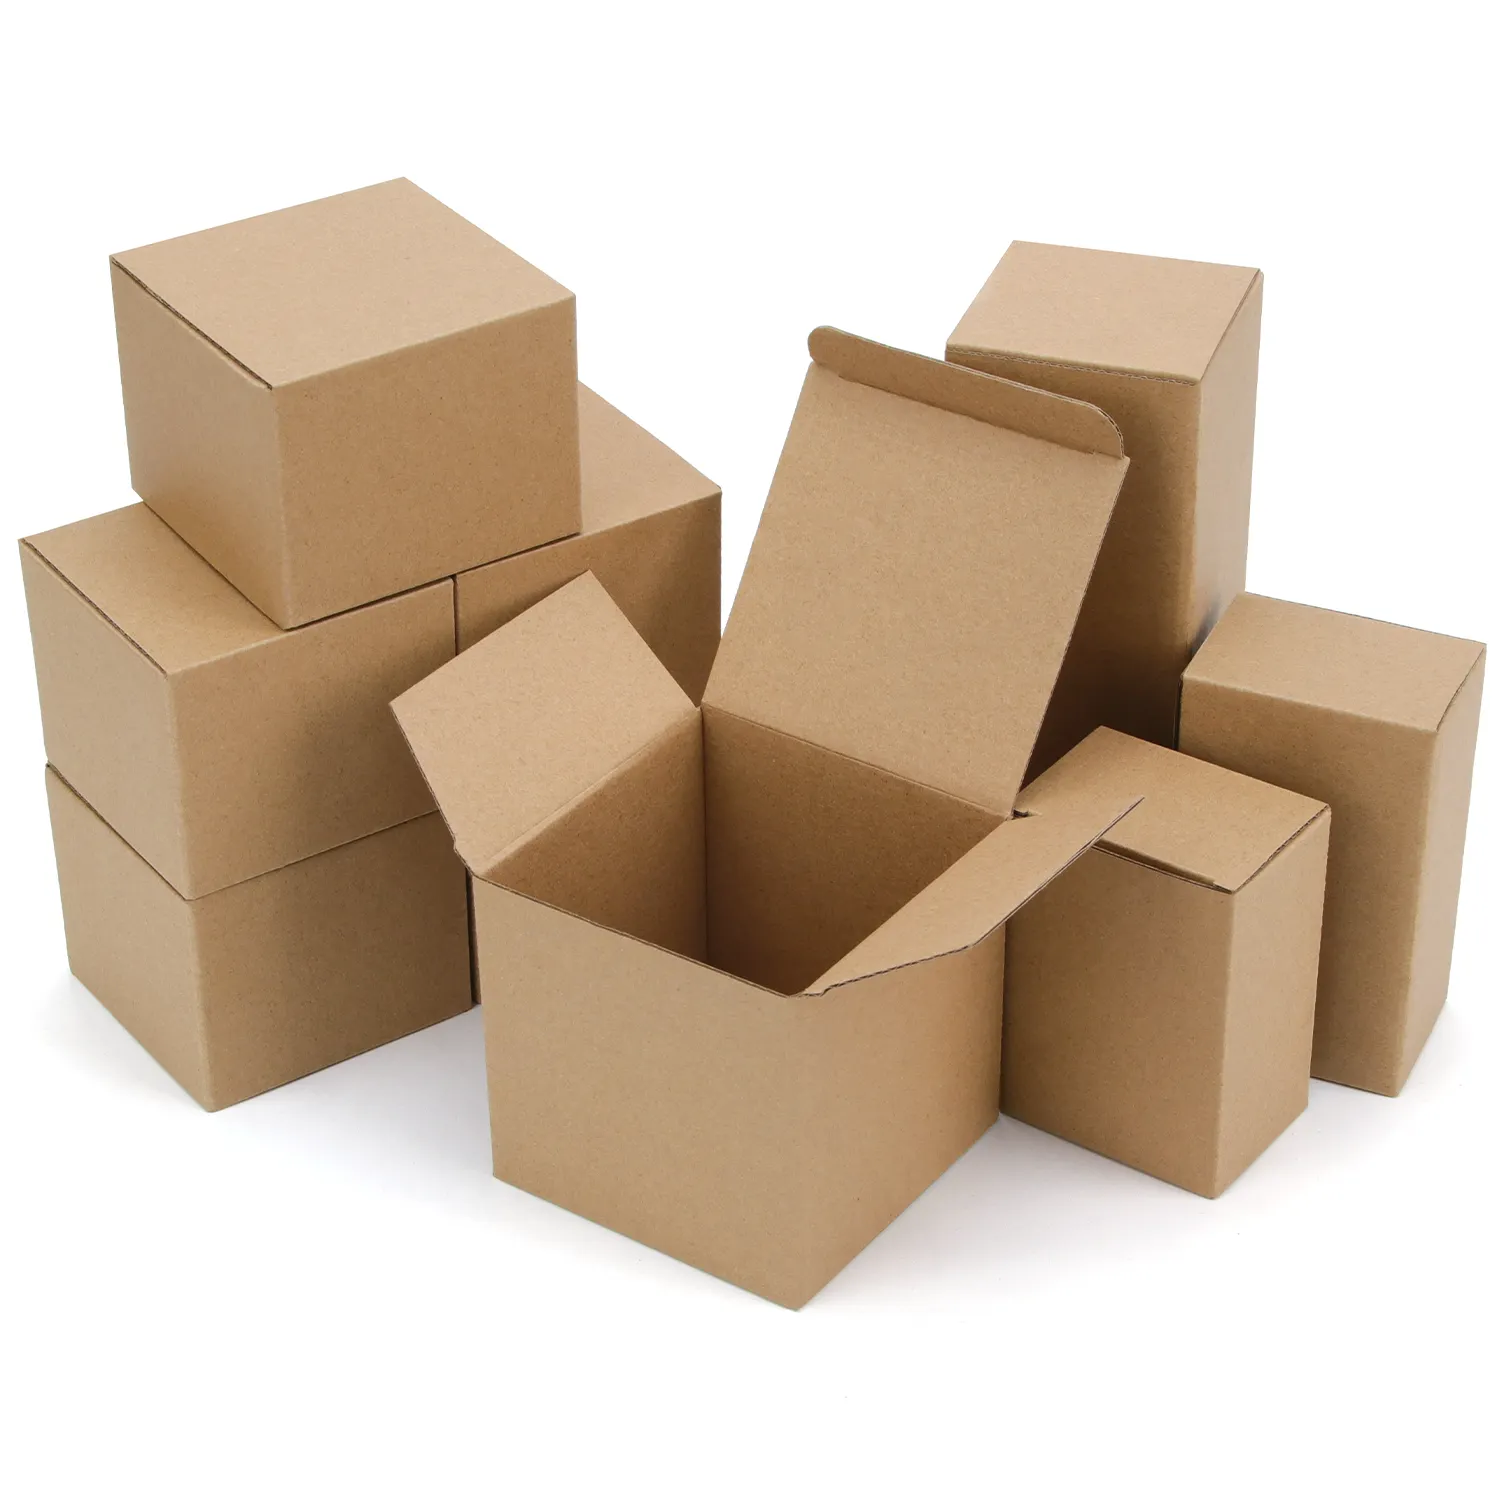 Подарочные коробки 4x4x4, коричневые подарочные коробки из крафт-бумаги, маленькие подарочные коробки из бумаги для печенья